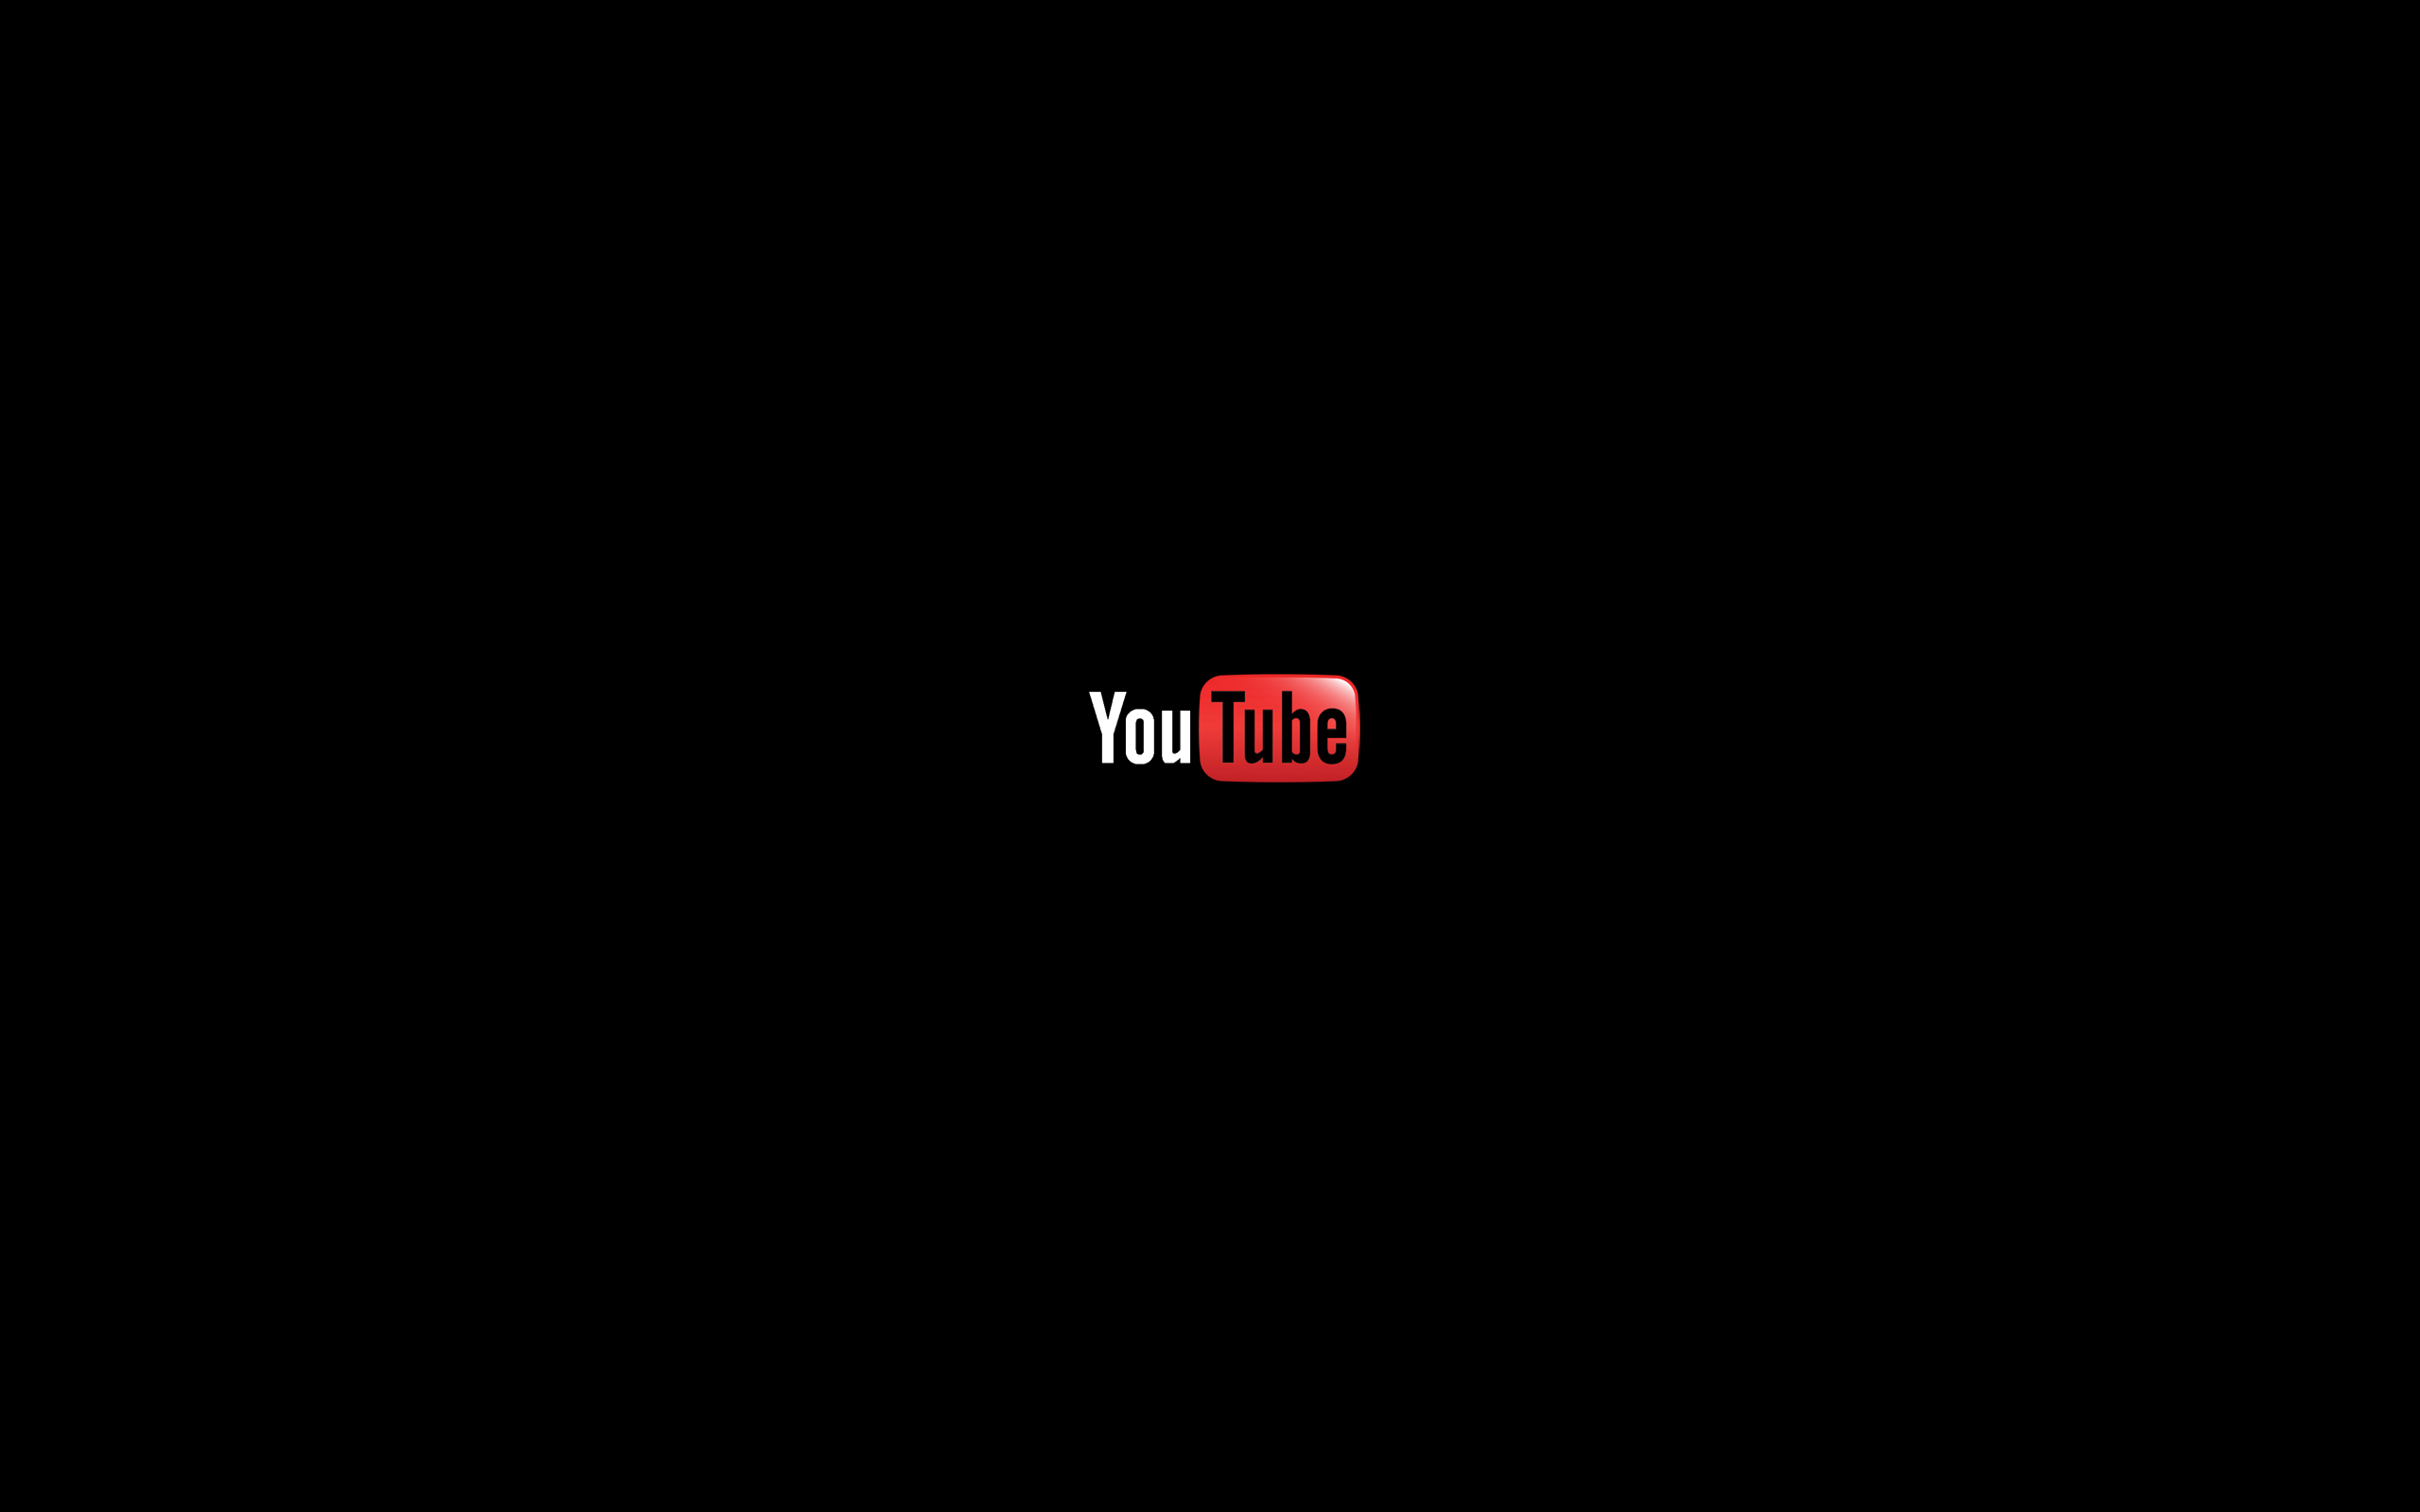 Ютуб видео обои. Youtube на черном фоне. Черный фон для ютуба. Логотип ютуб на черном фоне. Обои для ютуба.